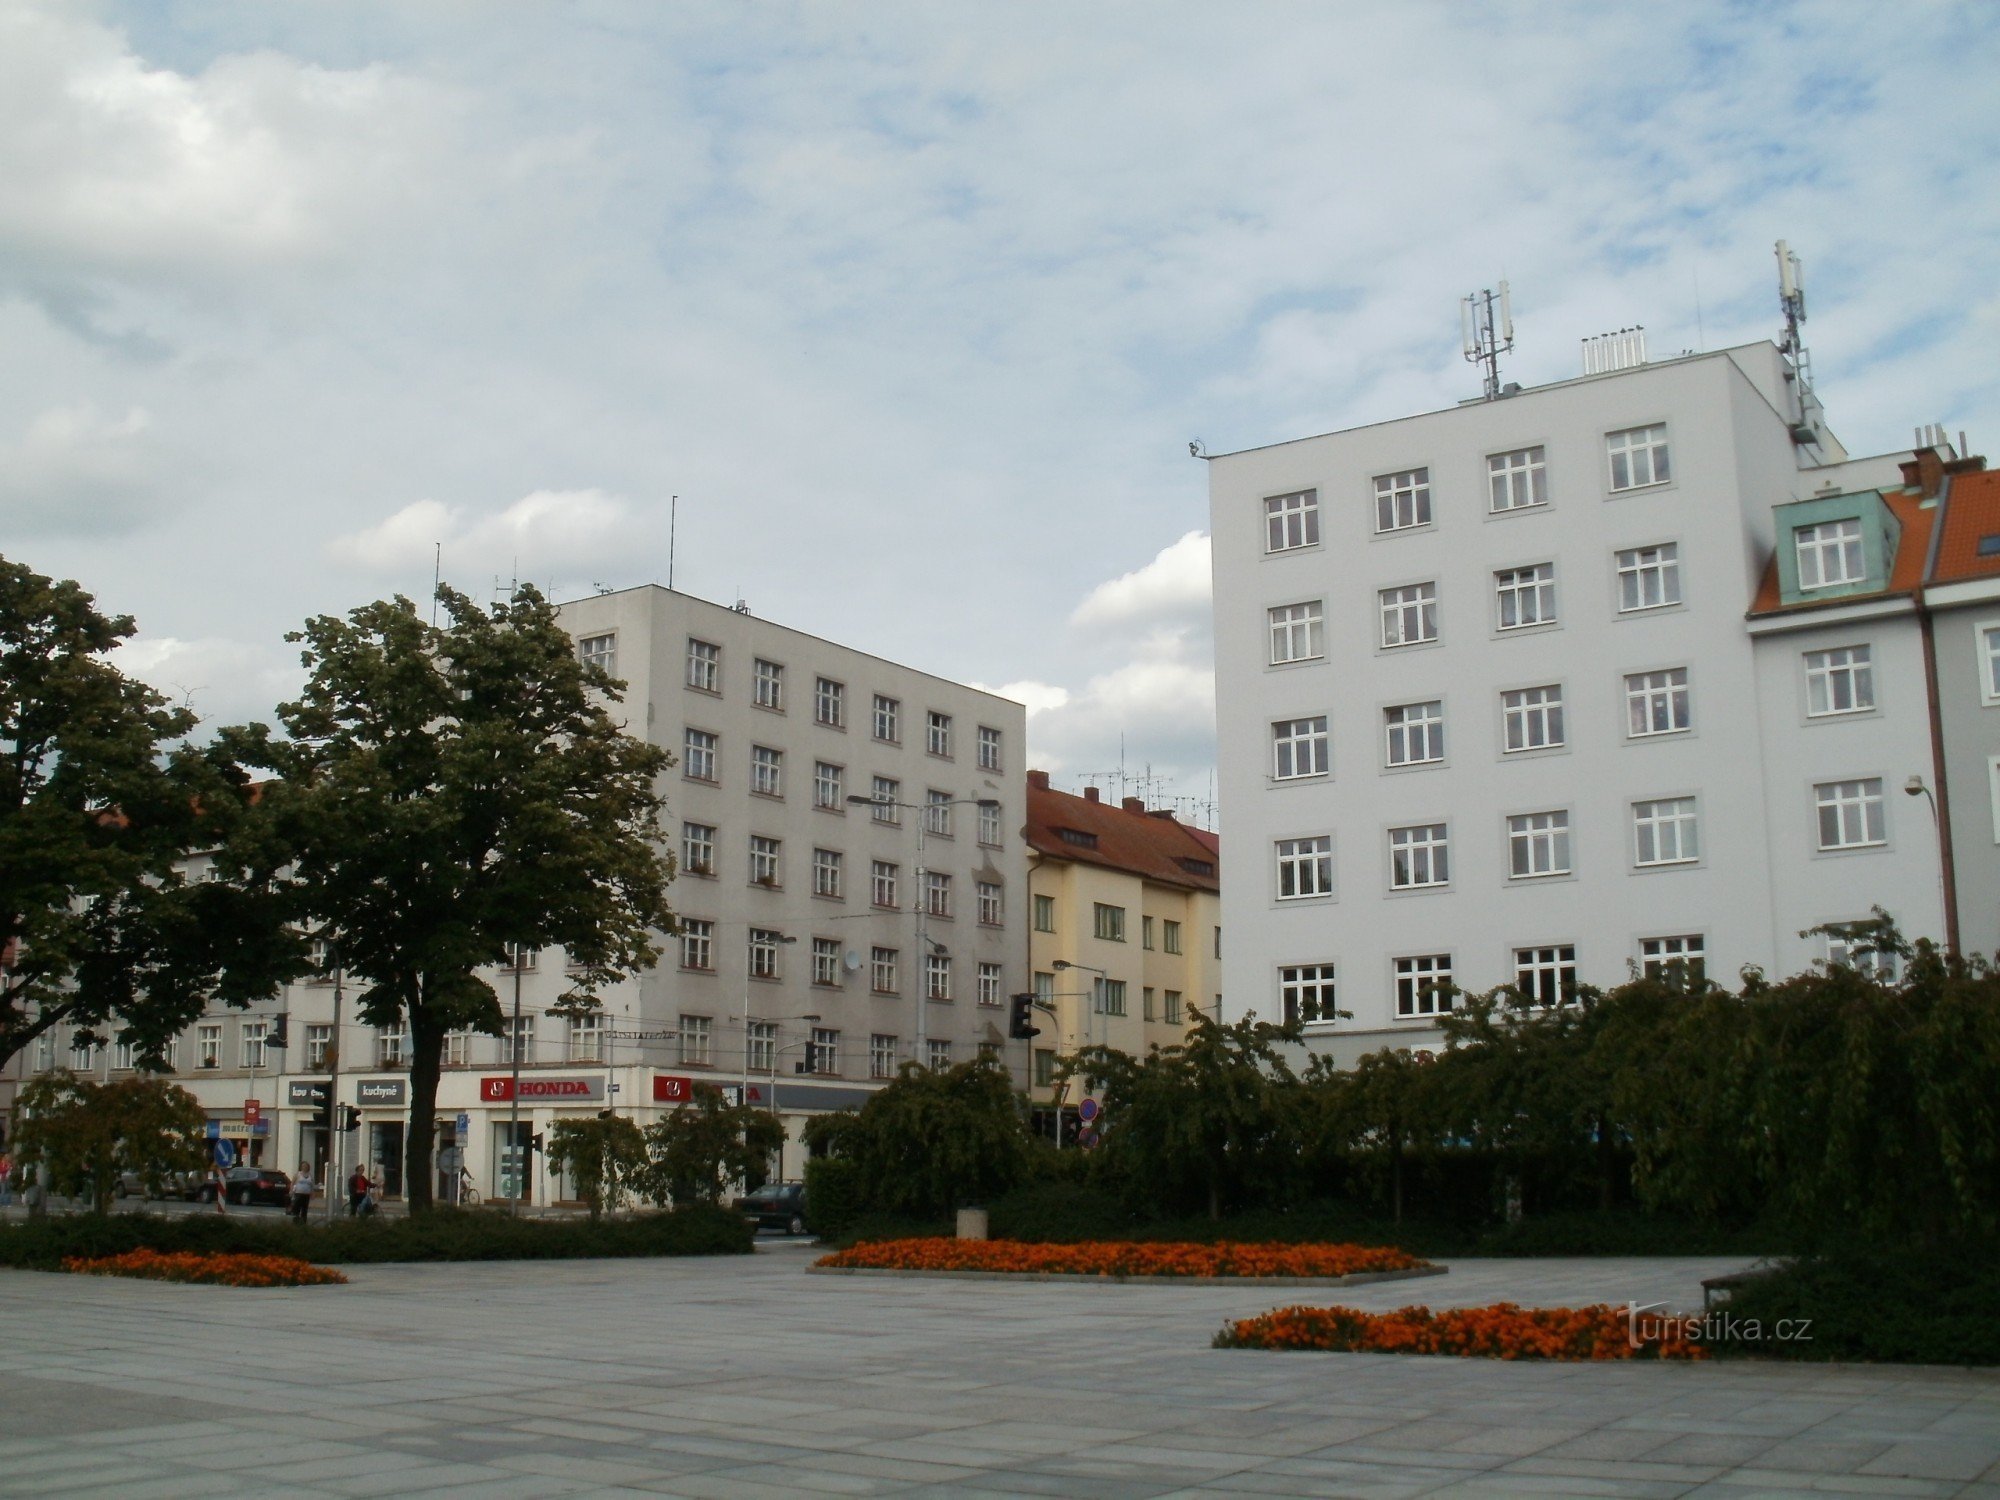 Hradec Králové - Piazza Ulrich